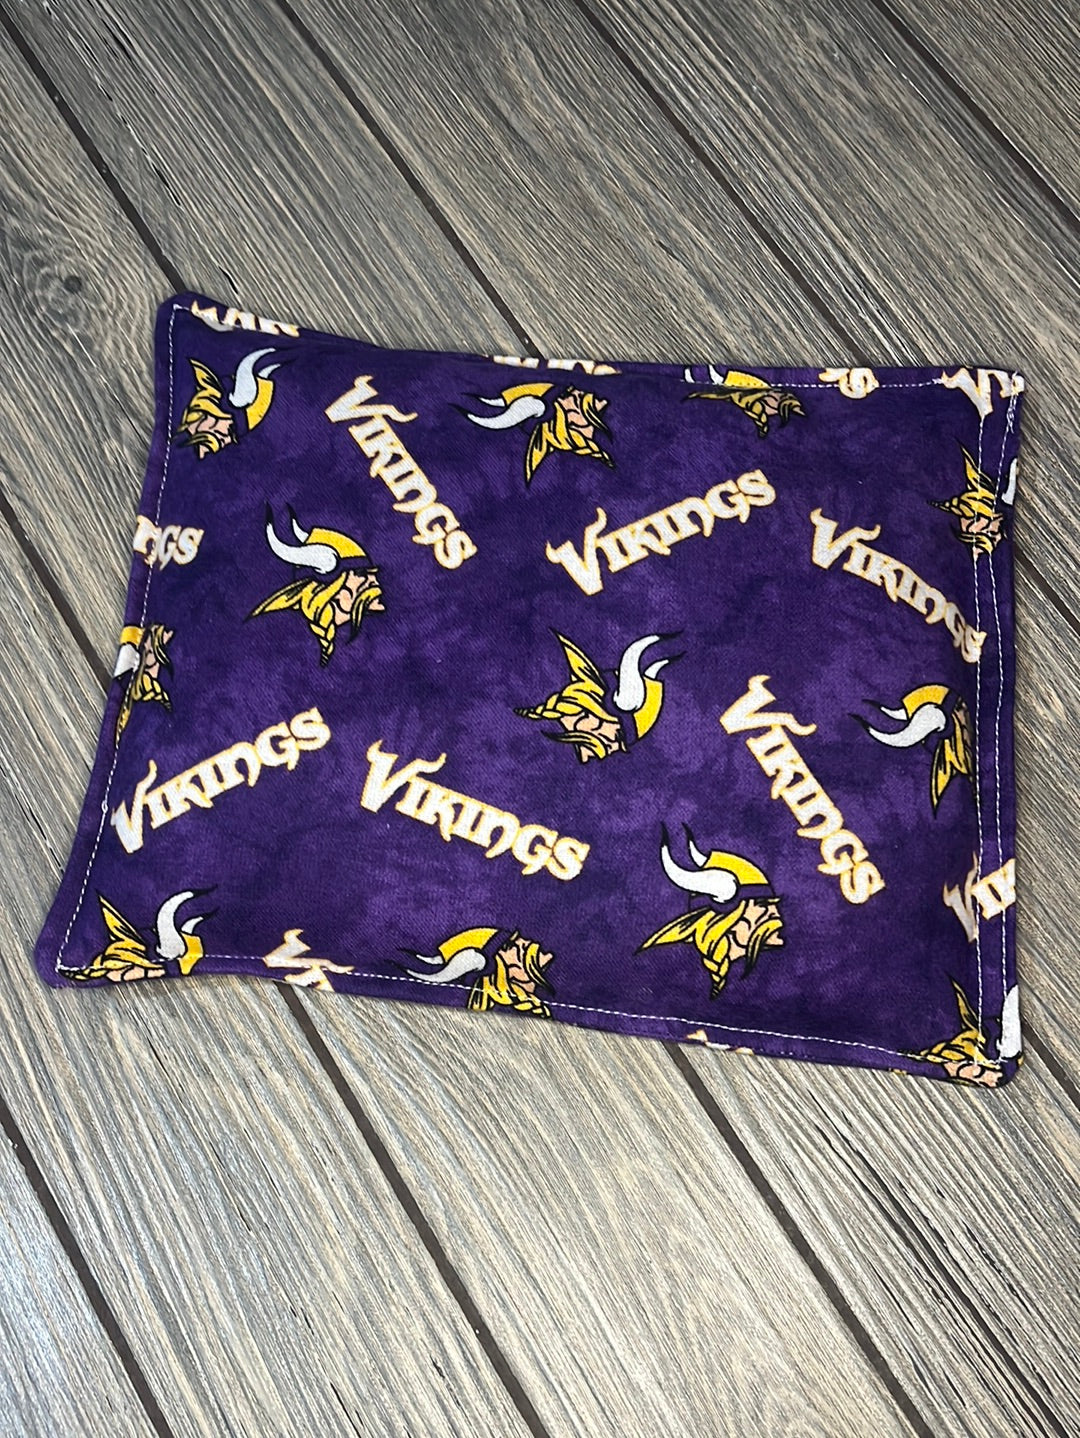 Vikings rice bag